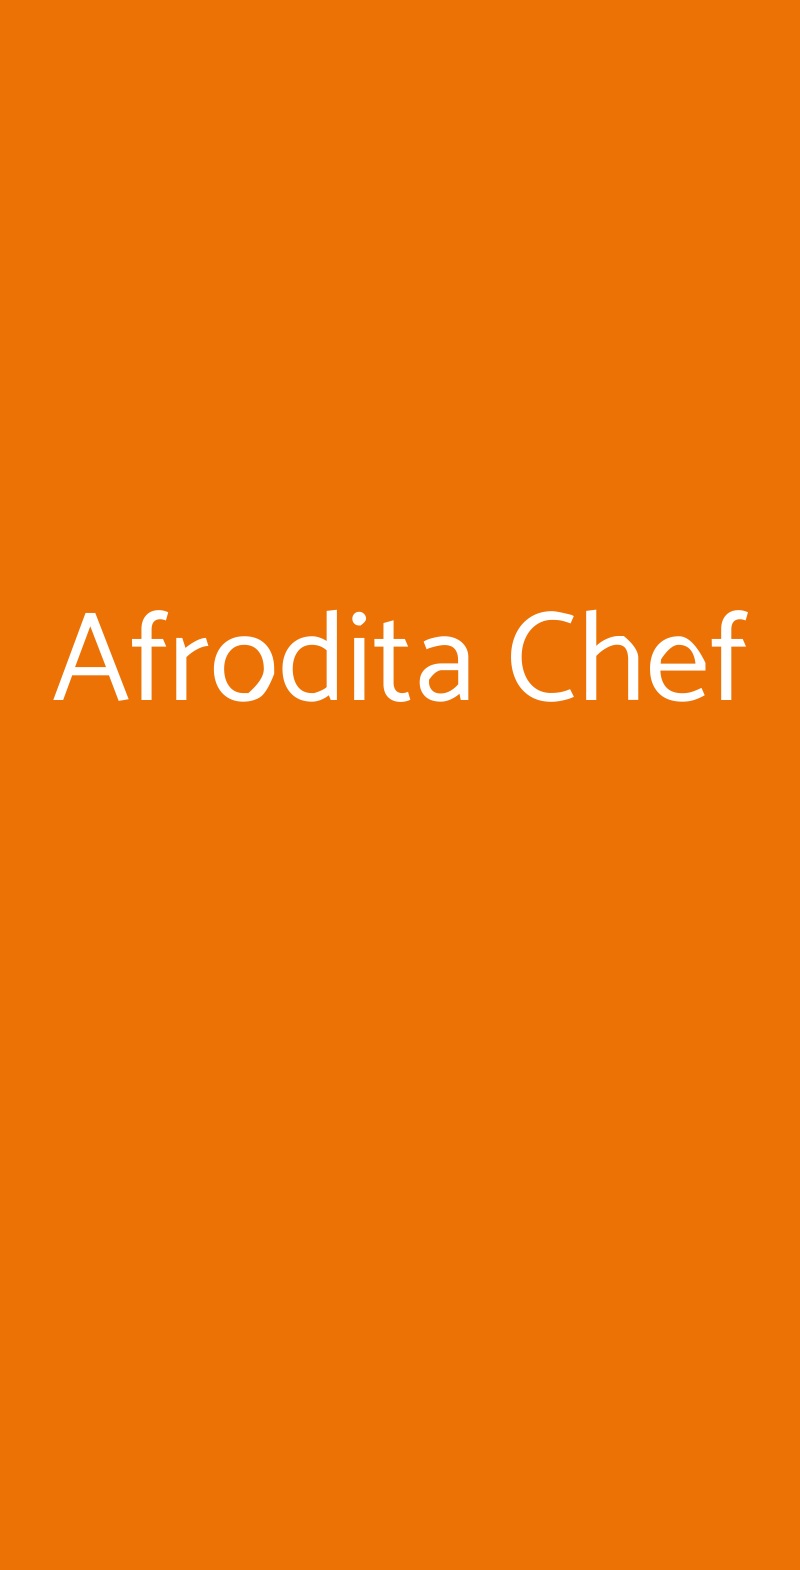 Afrodita Chef Bologna menù 1 pagina